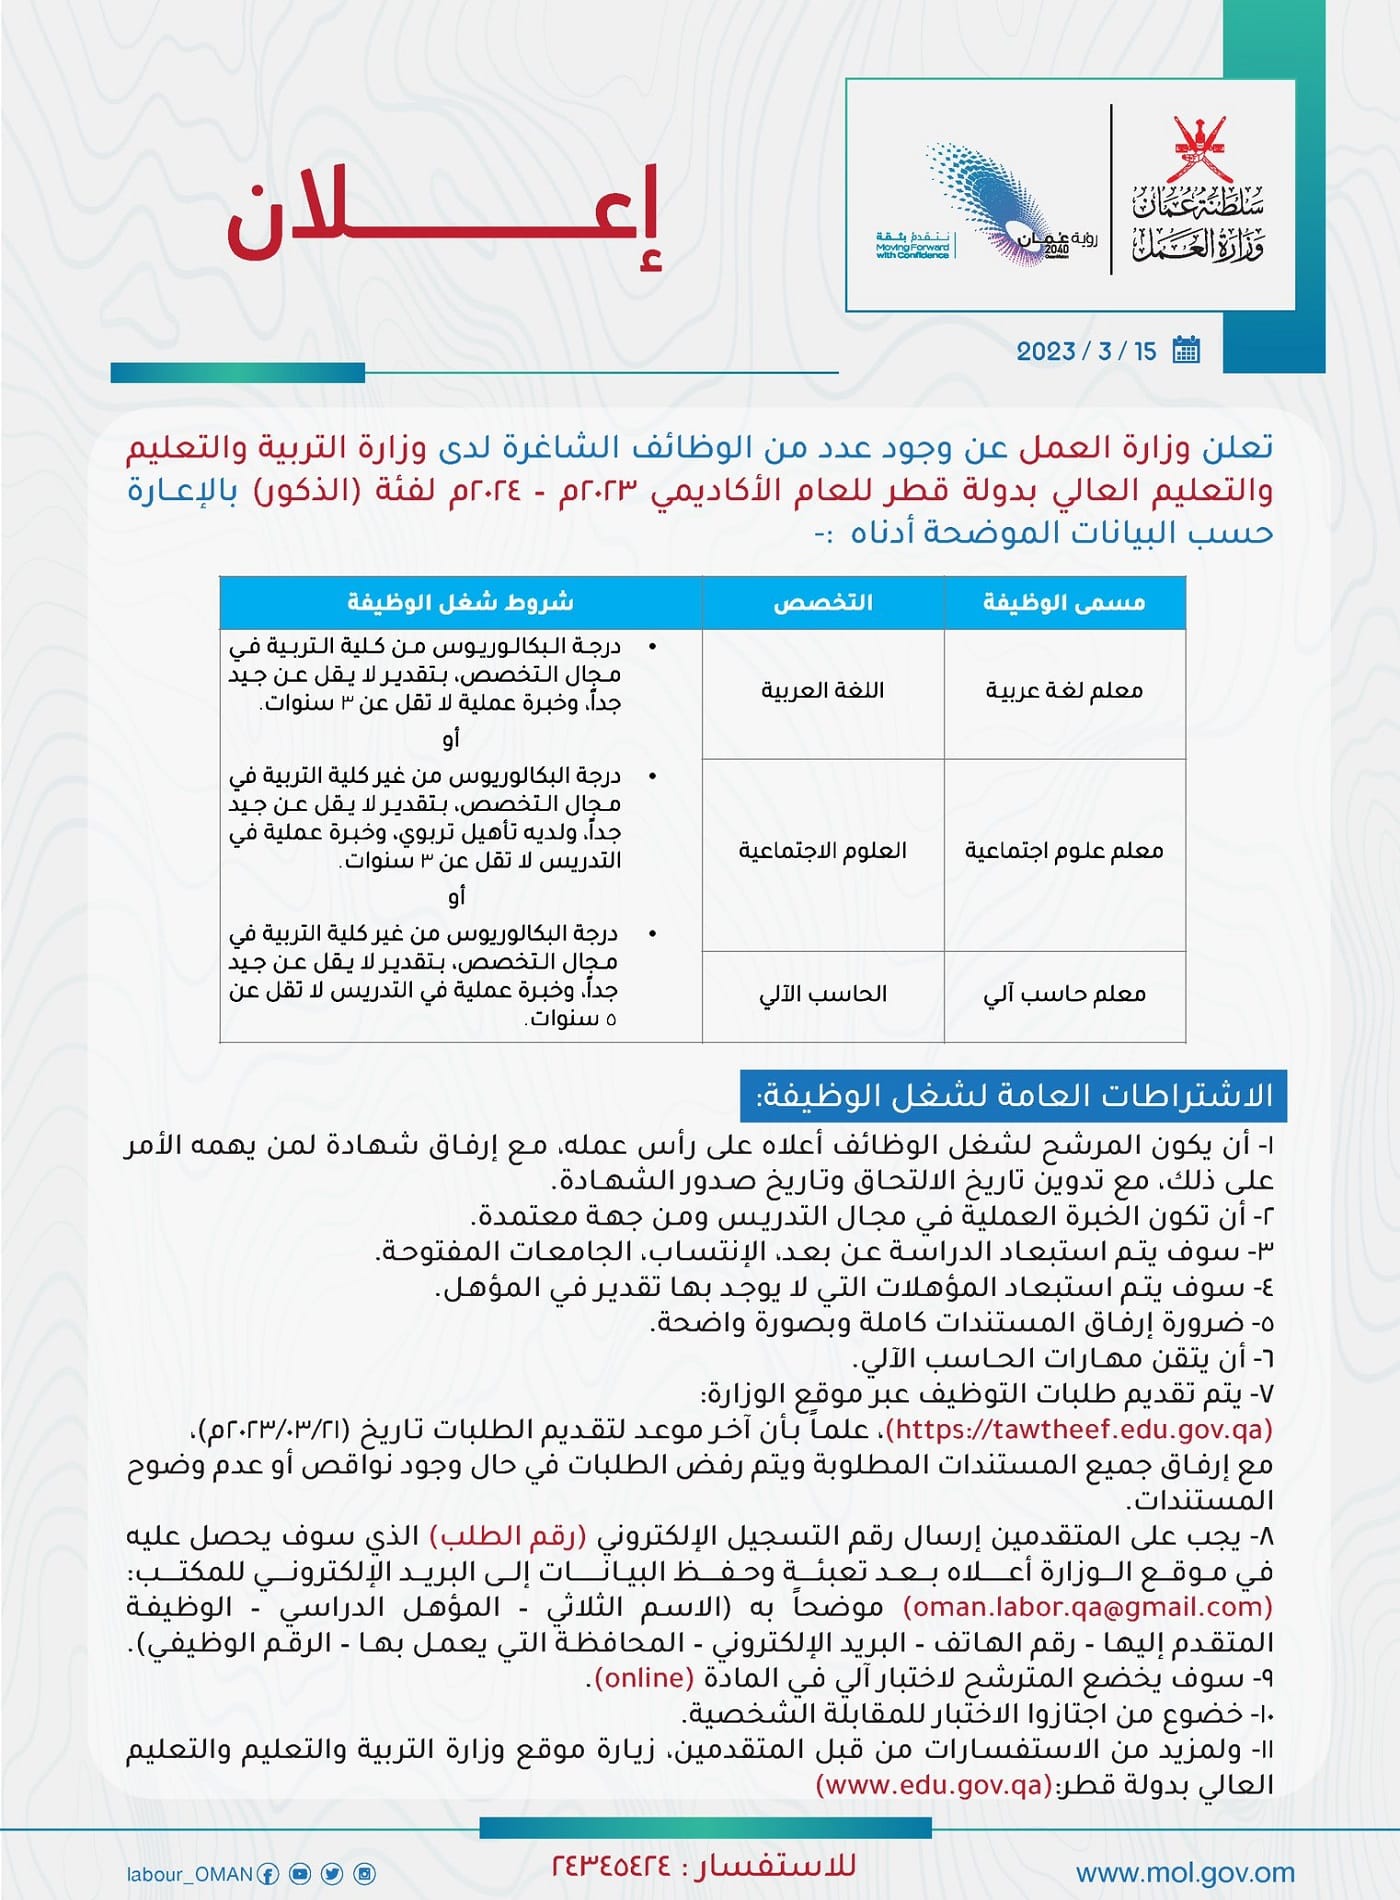 وزارة العمل في سلطنة عمان تعلن عن وظائف في وزارة التربية والتعليم والتعليم العالي بدولة قطر